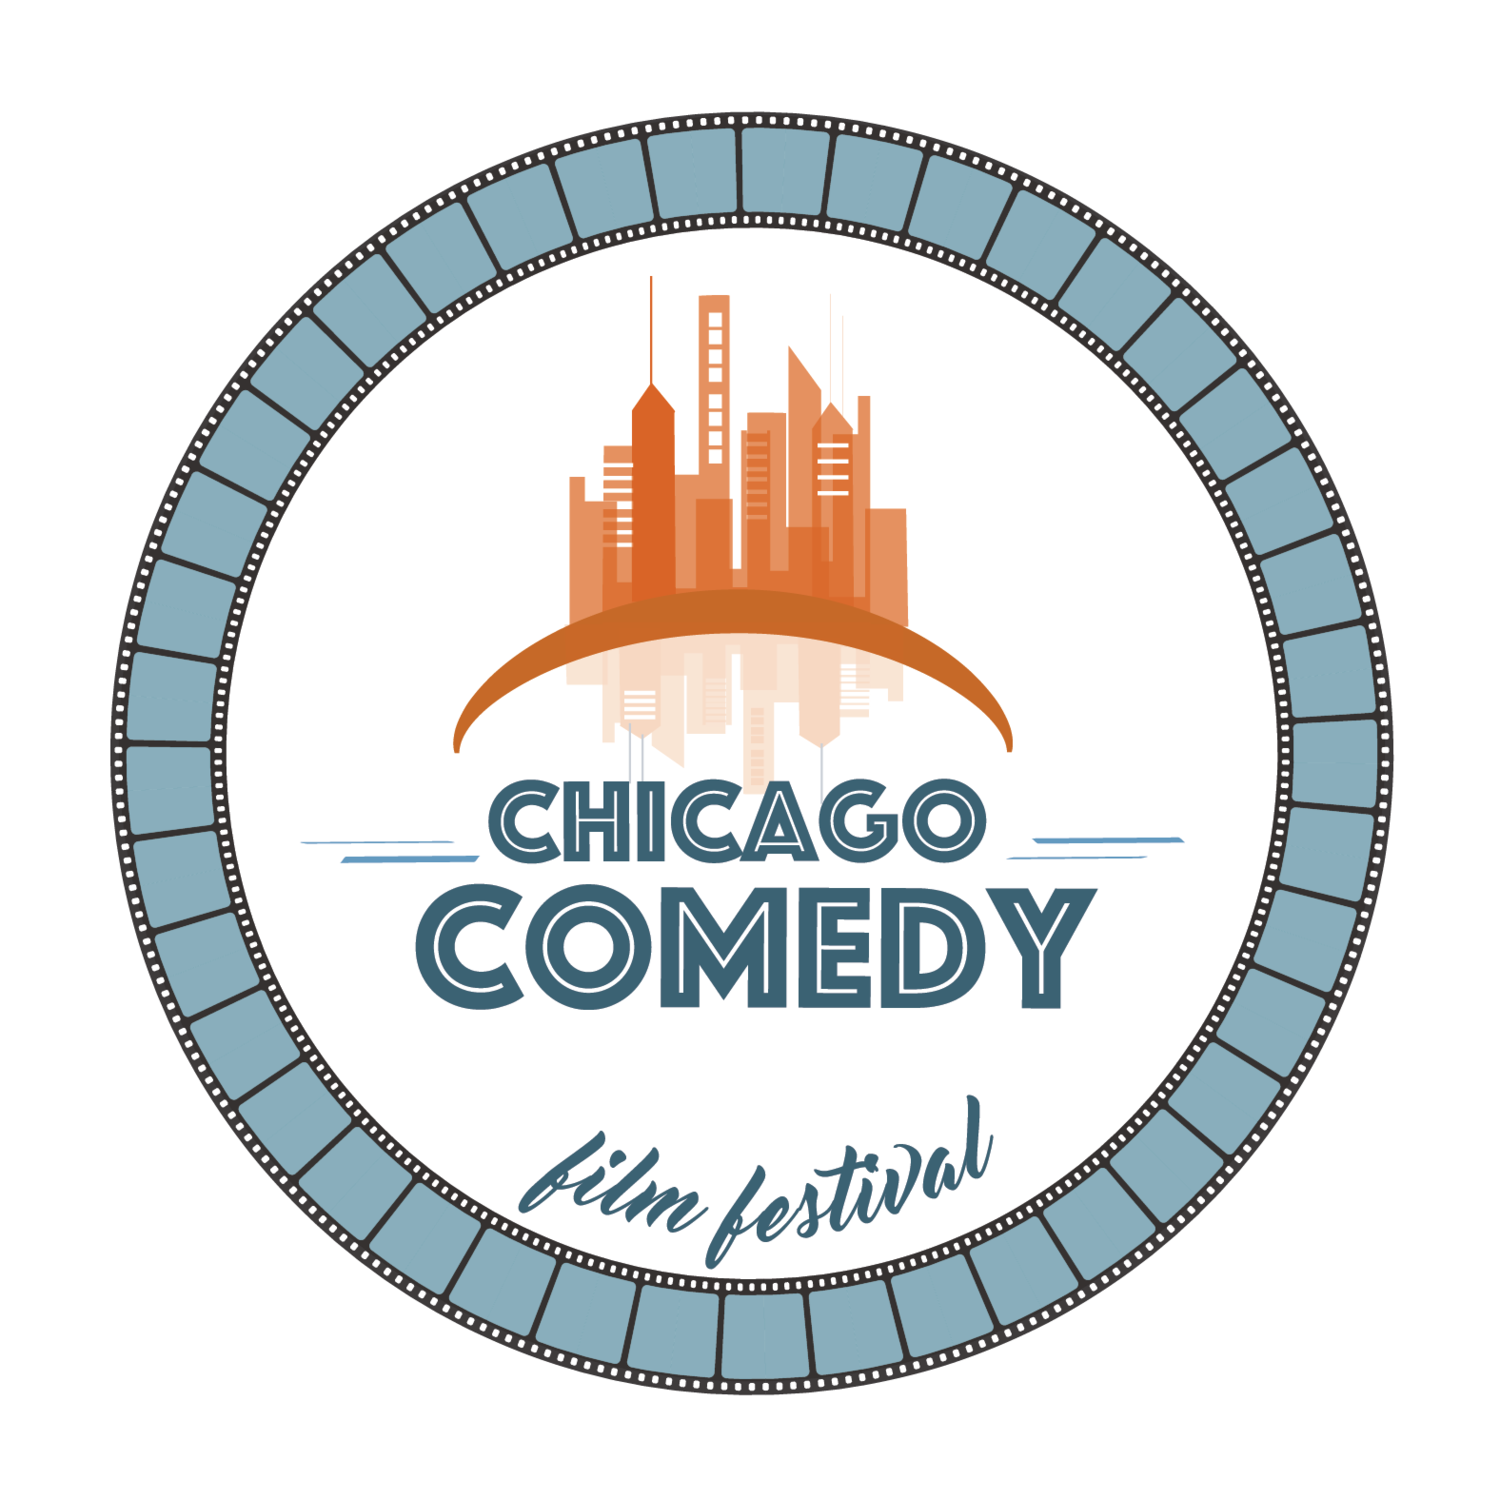 Chicago Comedy Film Festival